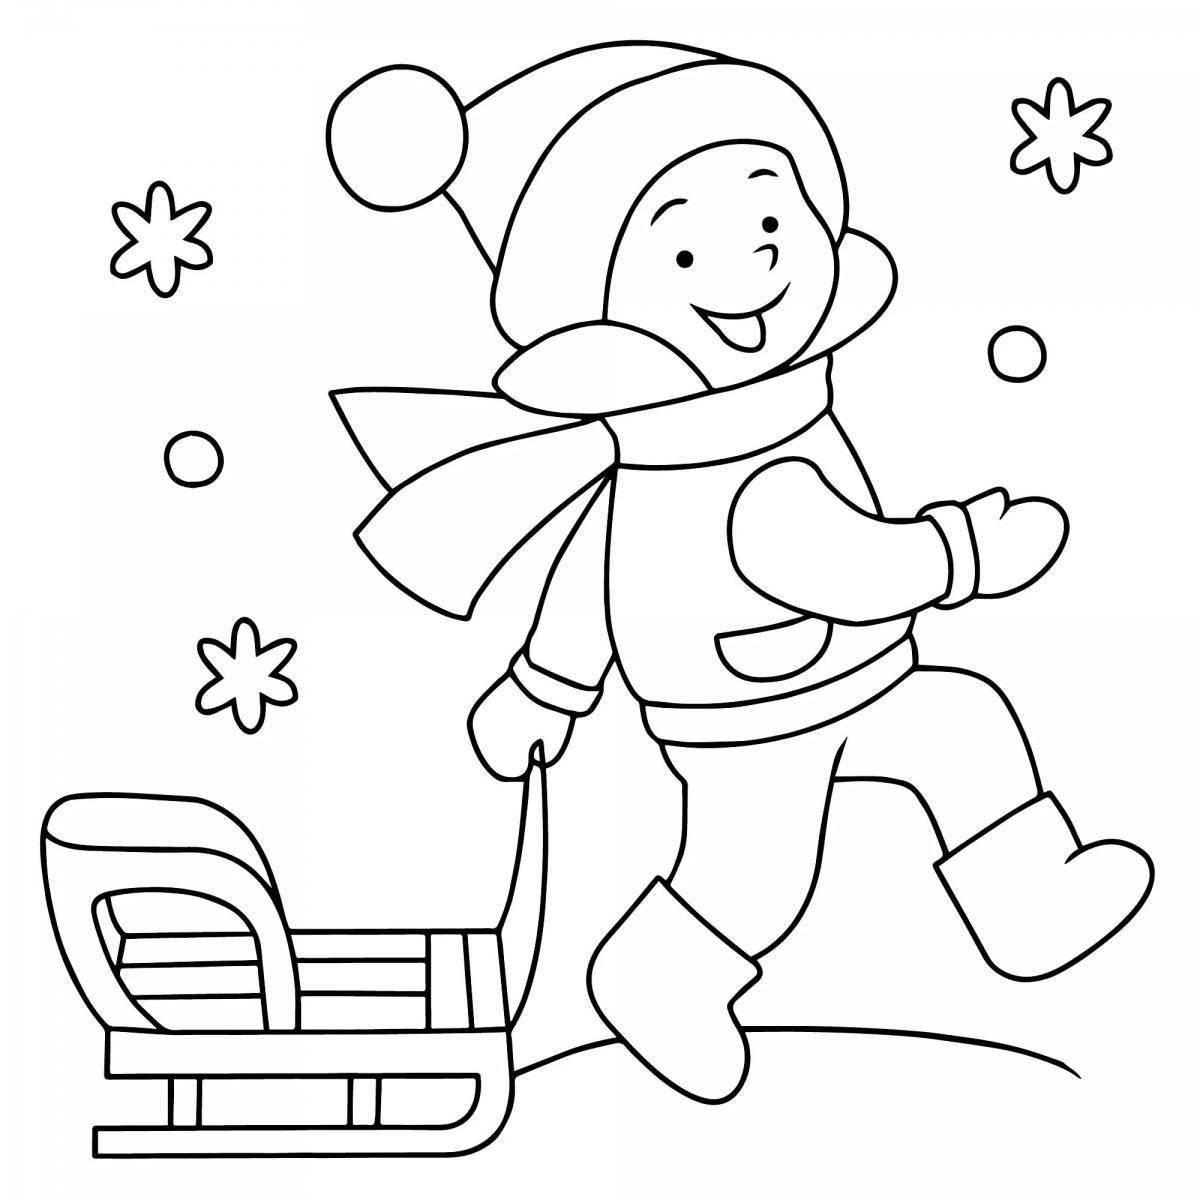 Joyful winter coloring book for preschoolers